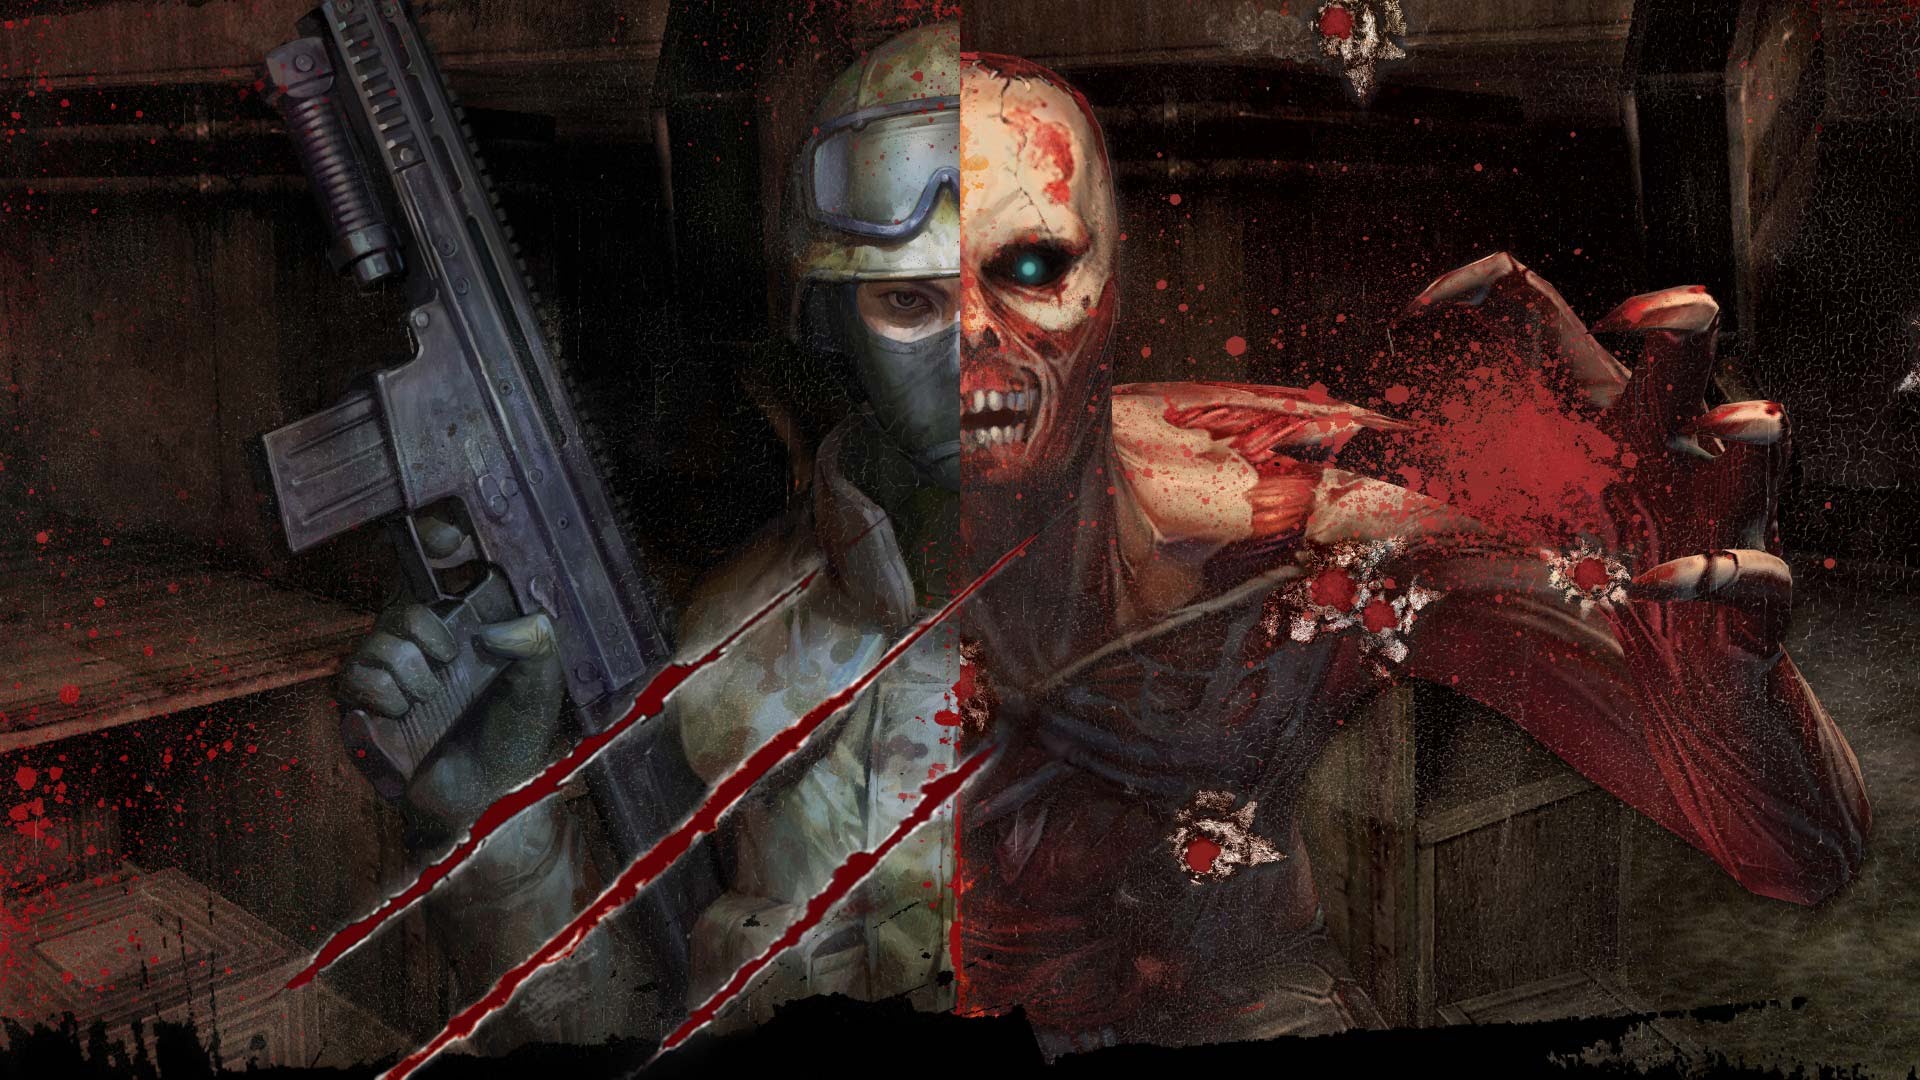 download game counter strike zombie escape